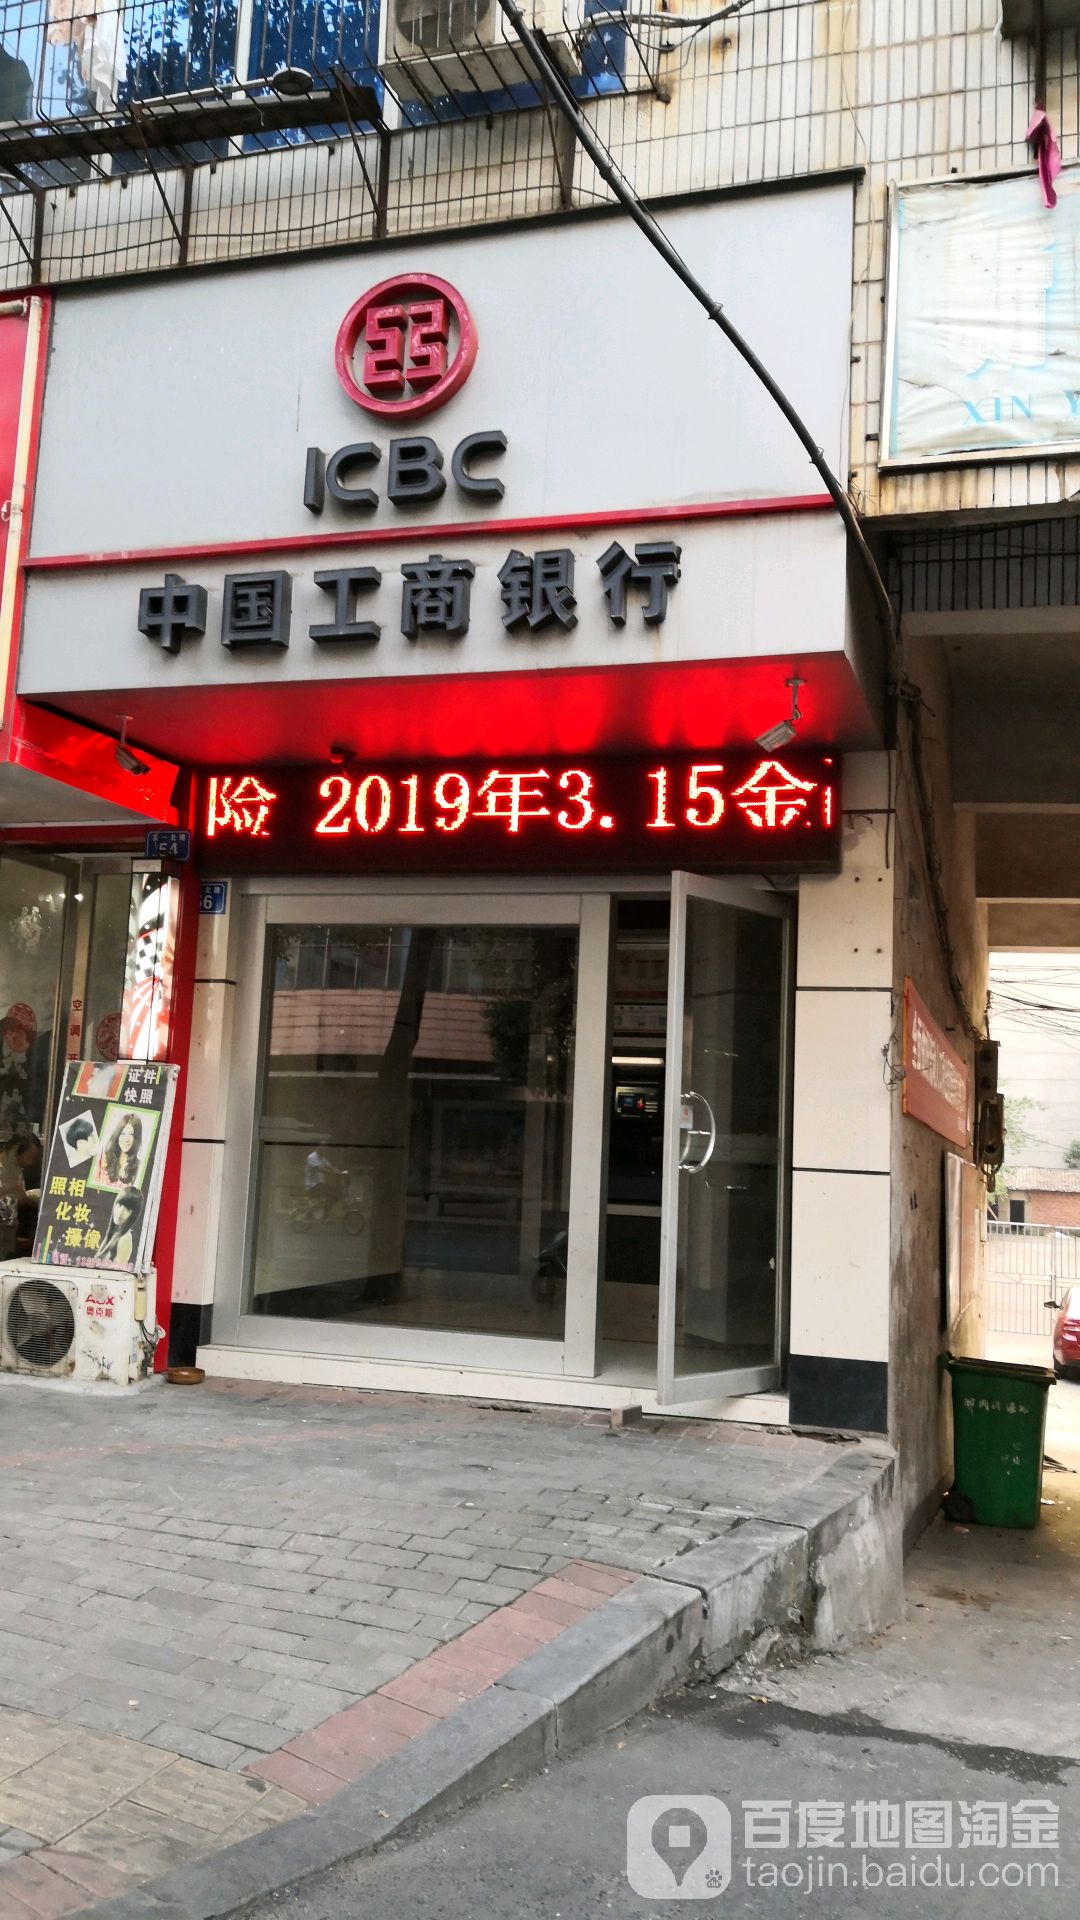 中国工商银行24小时自助银行服务(五一北路店)